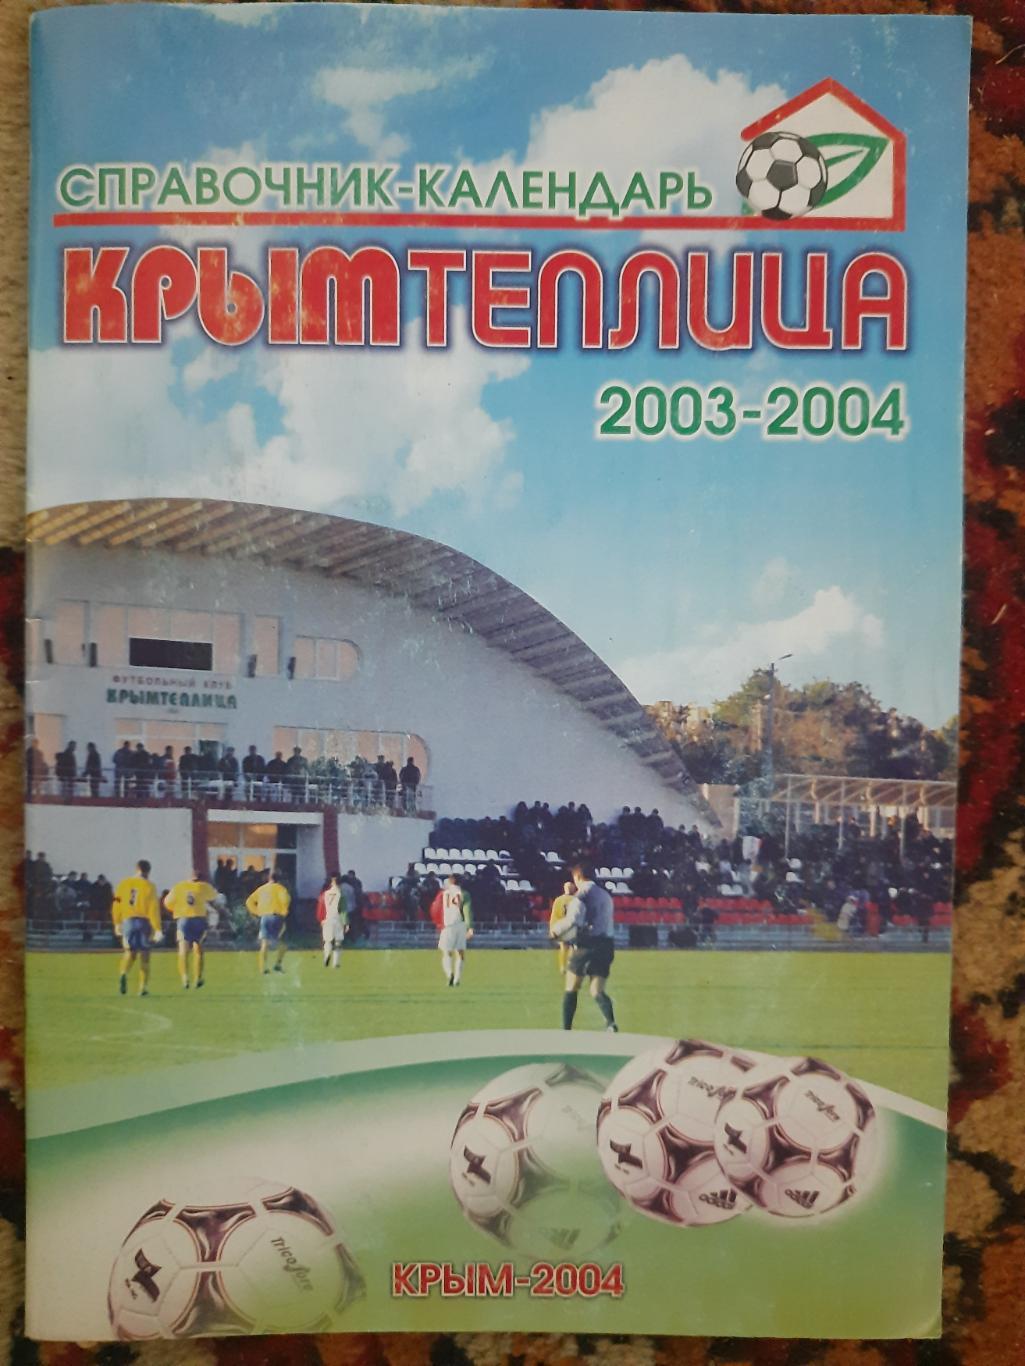 Крымтеплица , справочник-календарь 2003-2004